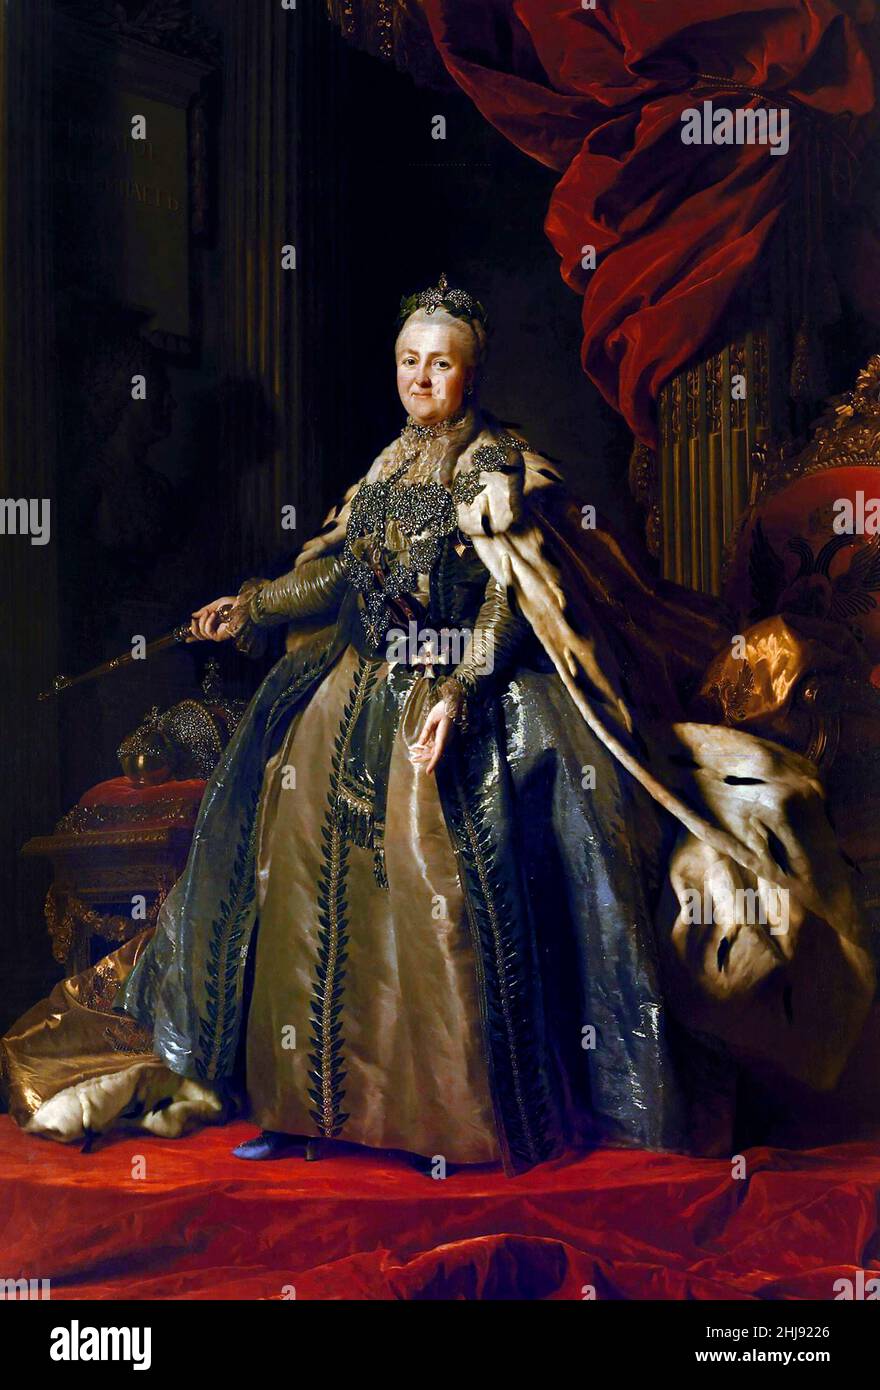 Catherine la Grande.Portrait de Catherine II de Russie (1729-1796) par Alexander Roslin (1718-1793), huile sur toile, c.1776/7 Banque D'Images